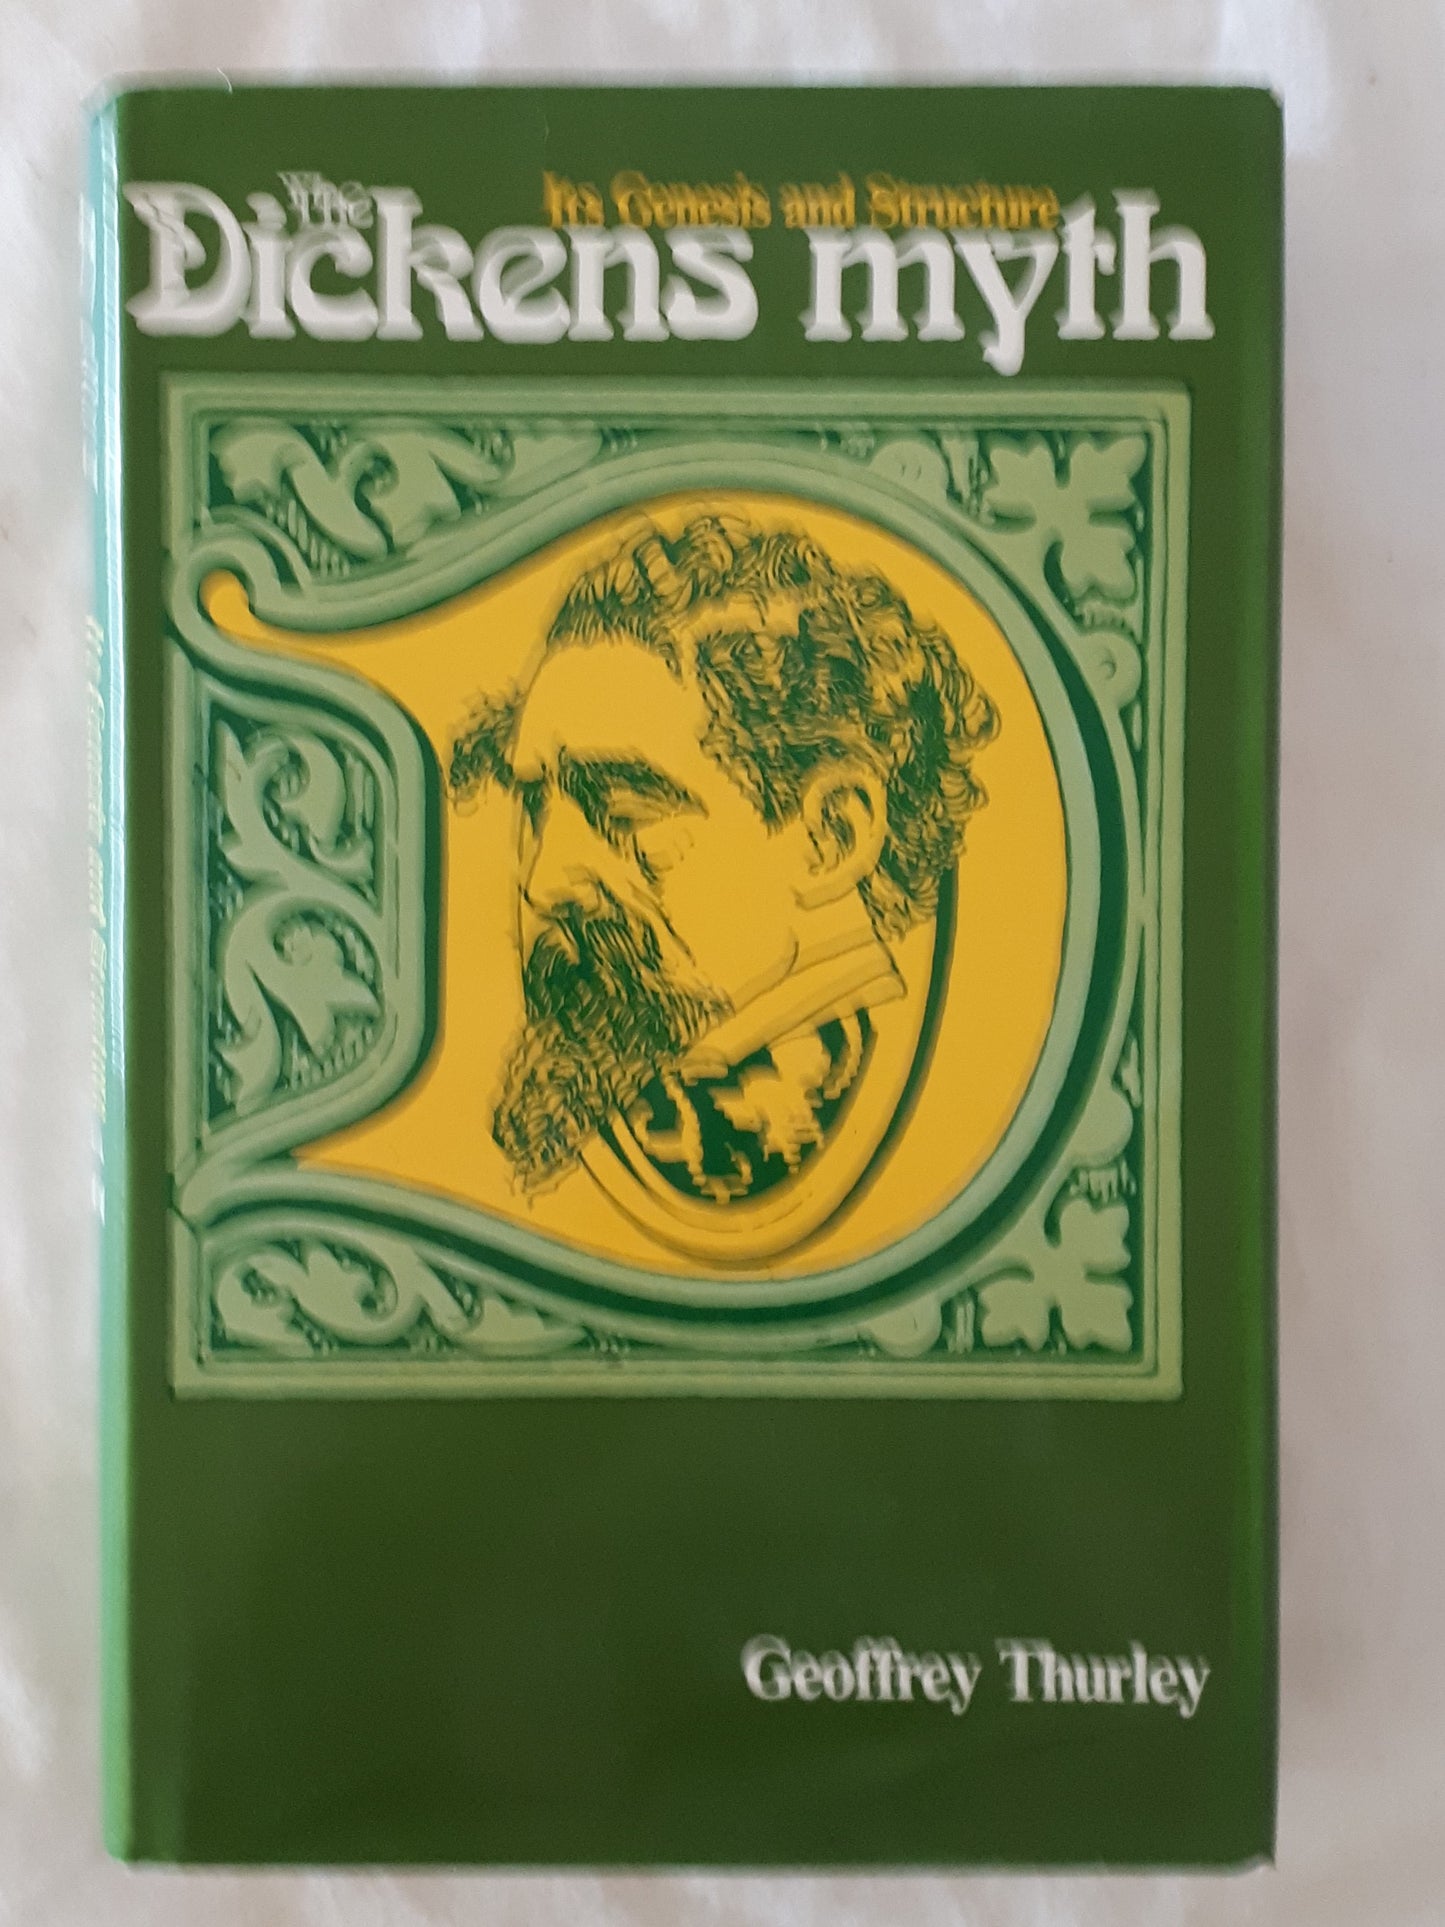 The Dickens Myth by Geoffrey Thurley